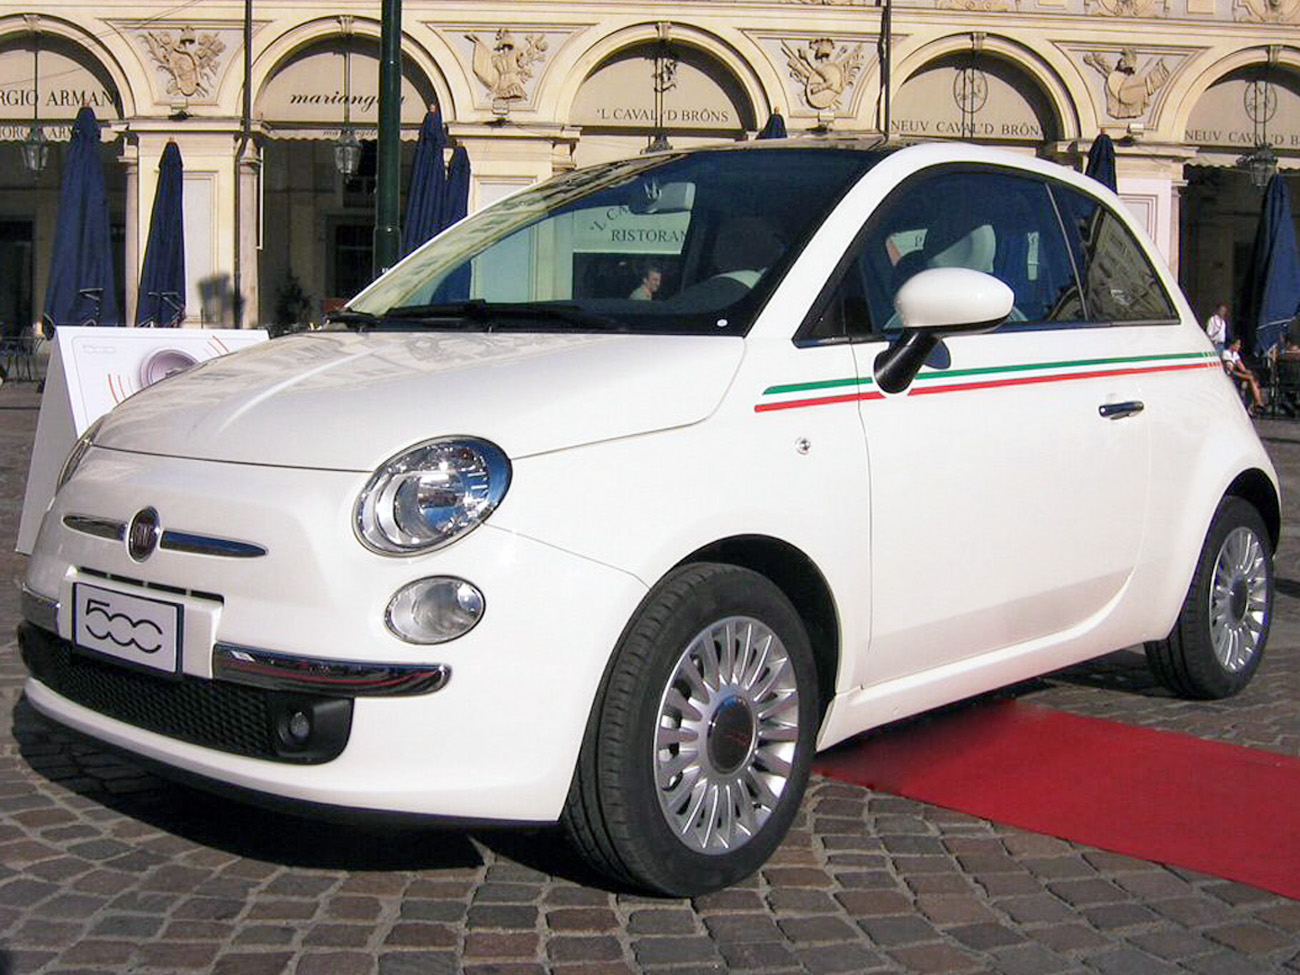 Acquista Kit fasce laterali replica bandiera italiana per Fiat 500